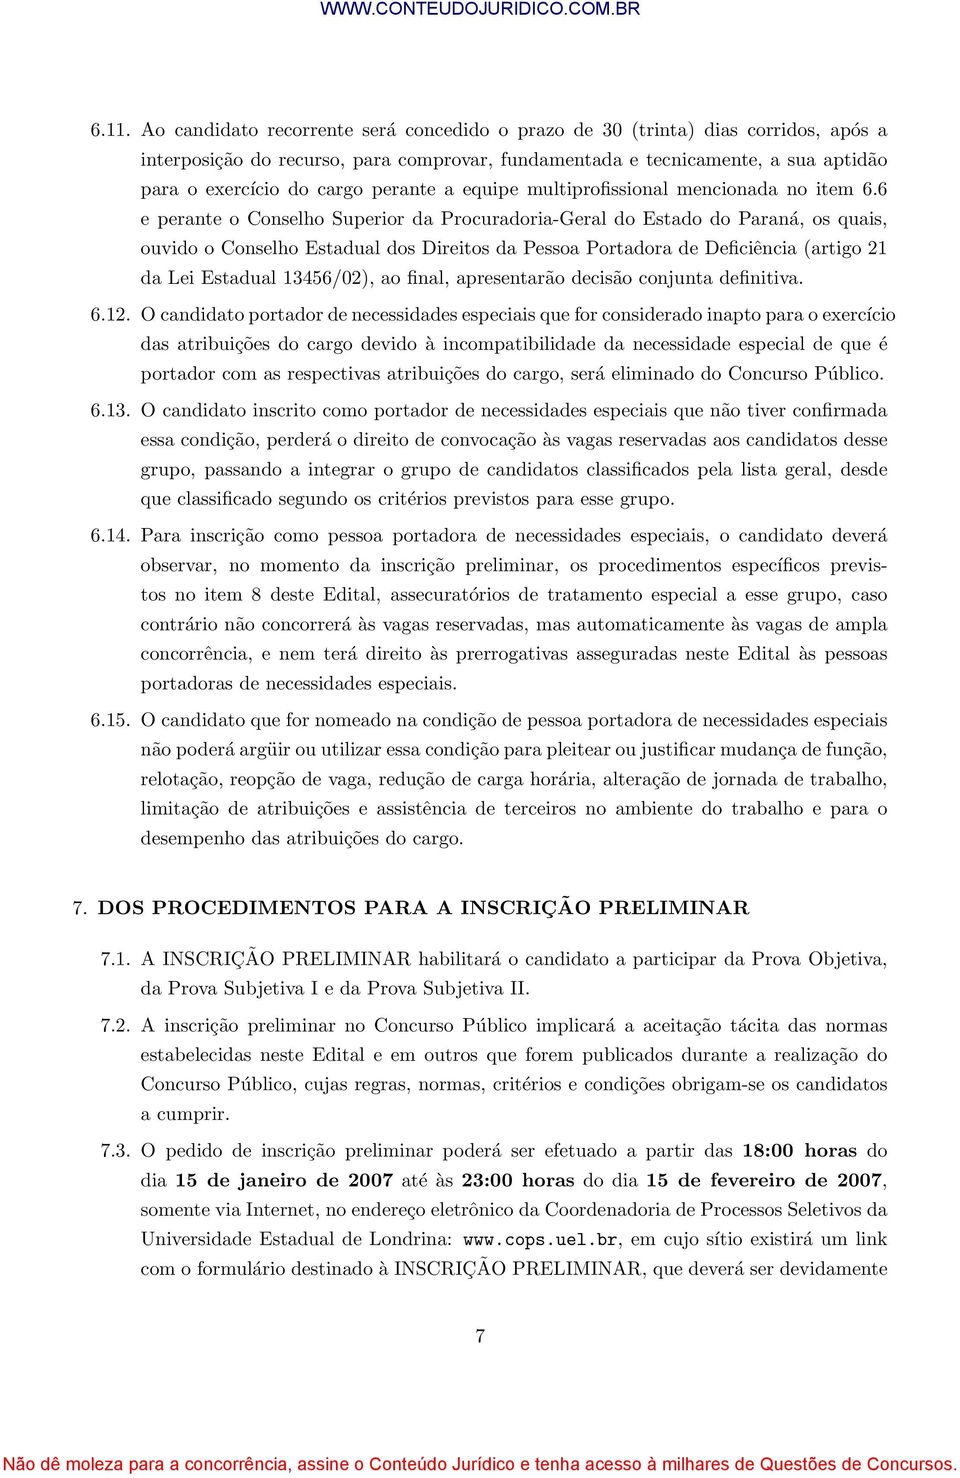 6 e perante o Conselho Superior da Procuradoria-Geral do Estado do Paraná, os quais, ouvido o Conselho Estadual dos Direitos da Pessoa Portadora de Deficiência (artigo 21 da Lei Estadual 13456/02),